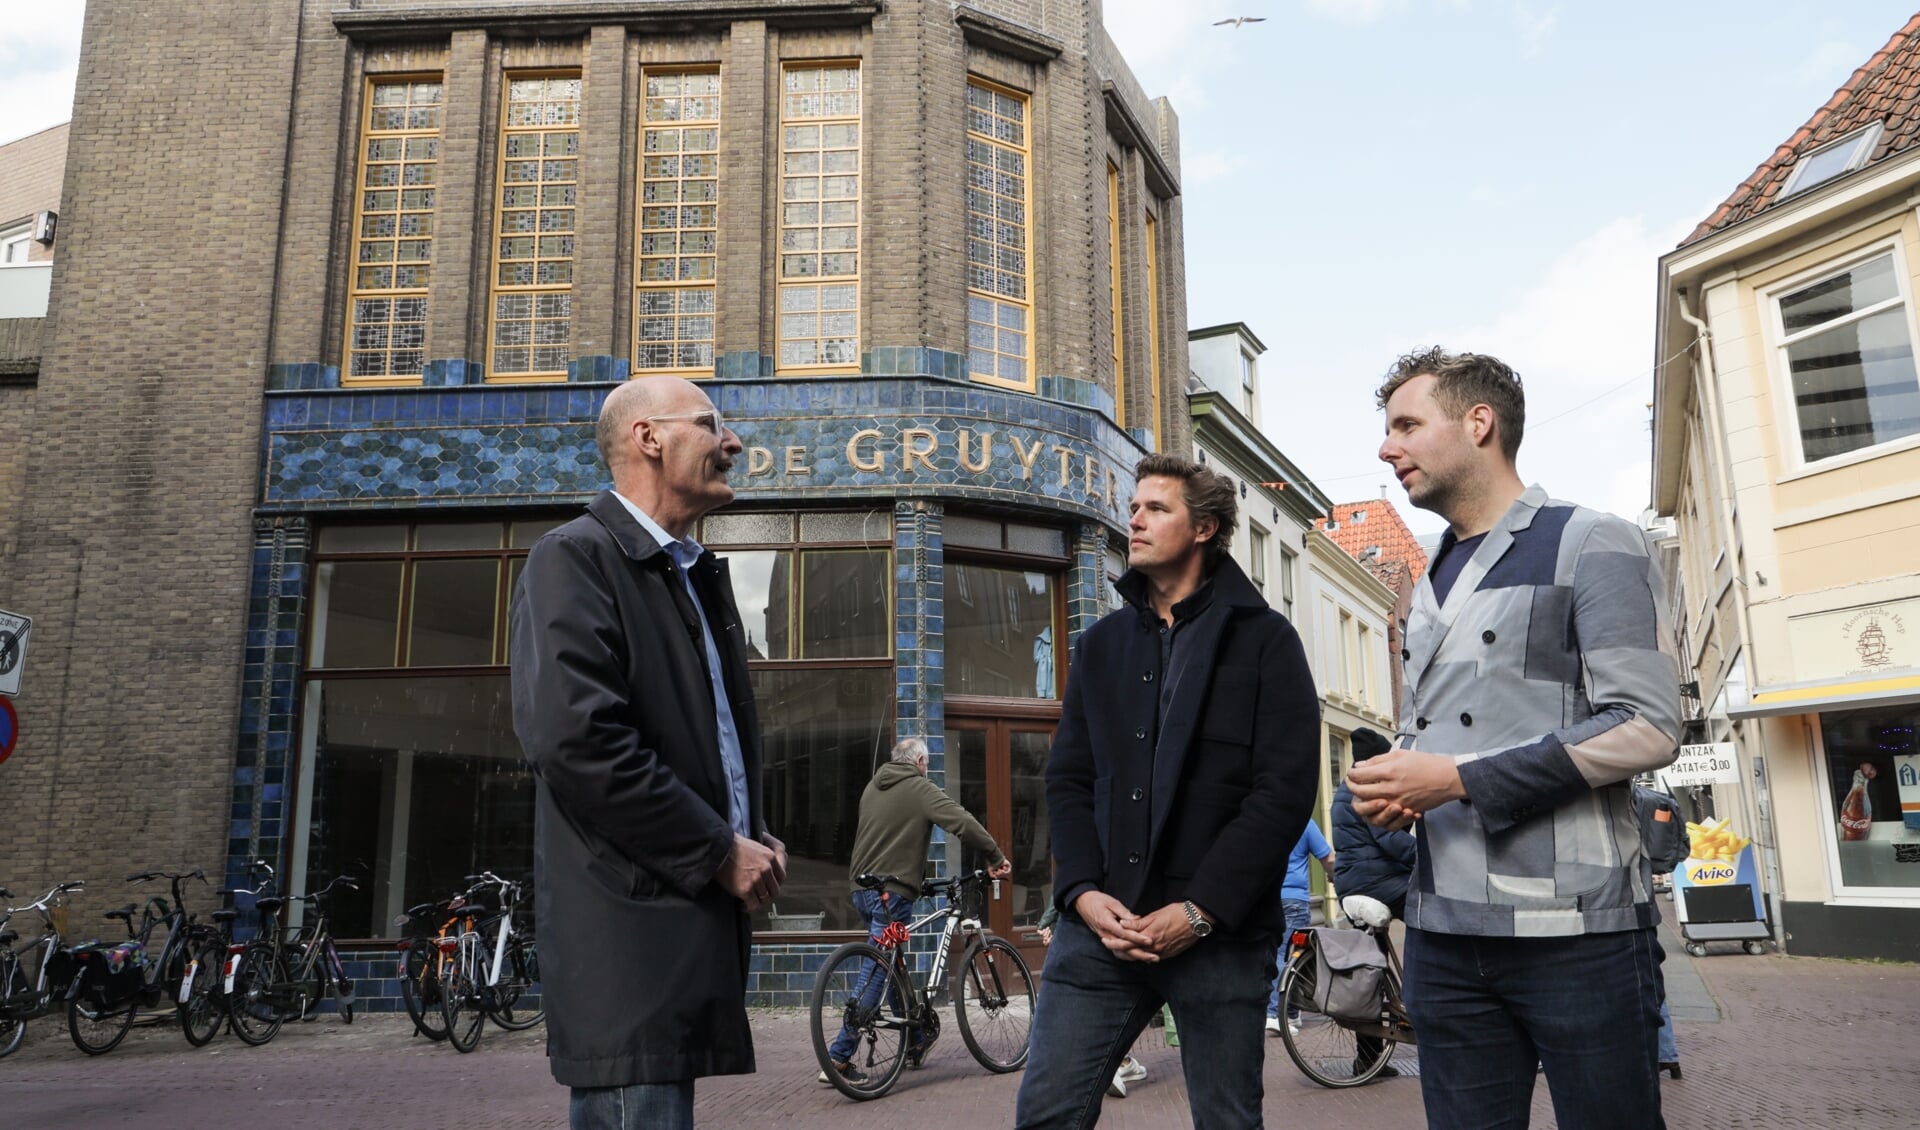 Eigenaar Freek van Waveren, wethouder Axel Boomgaars en Pieter Meijers van Erfgoed gemeente Hoorn zijn content met de samenwerking die heeft geleid tot het behoud van de mooie historische winkelgevel.  